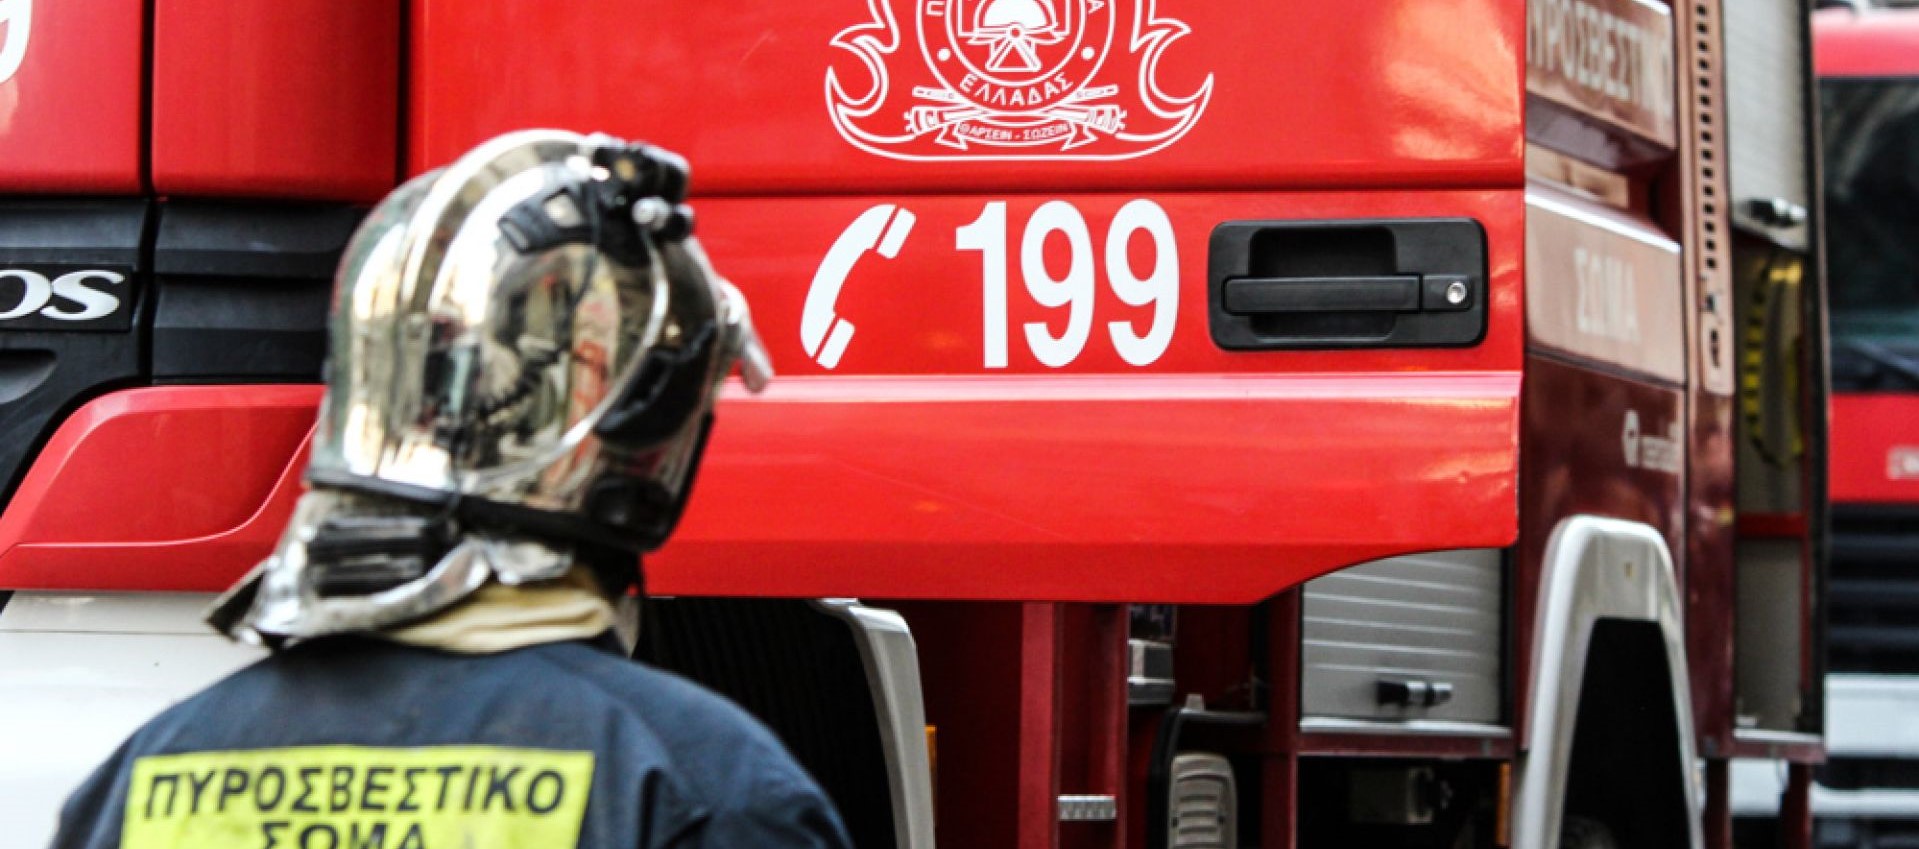 Αλμυρός: Νεκρός από ανακοπή καρδιάς 39χρονος πυροσβέστης εν ώρα υπηρεσίας (upd)